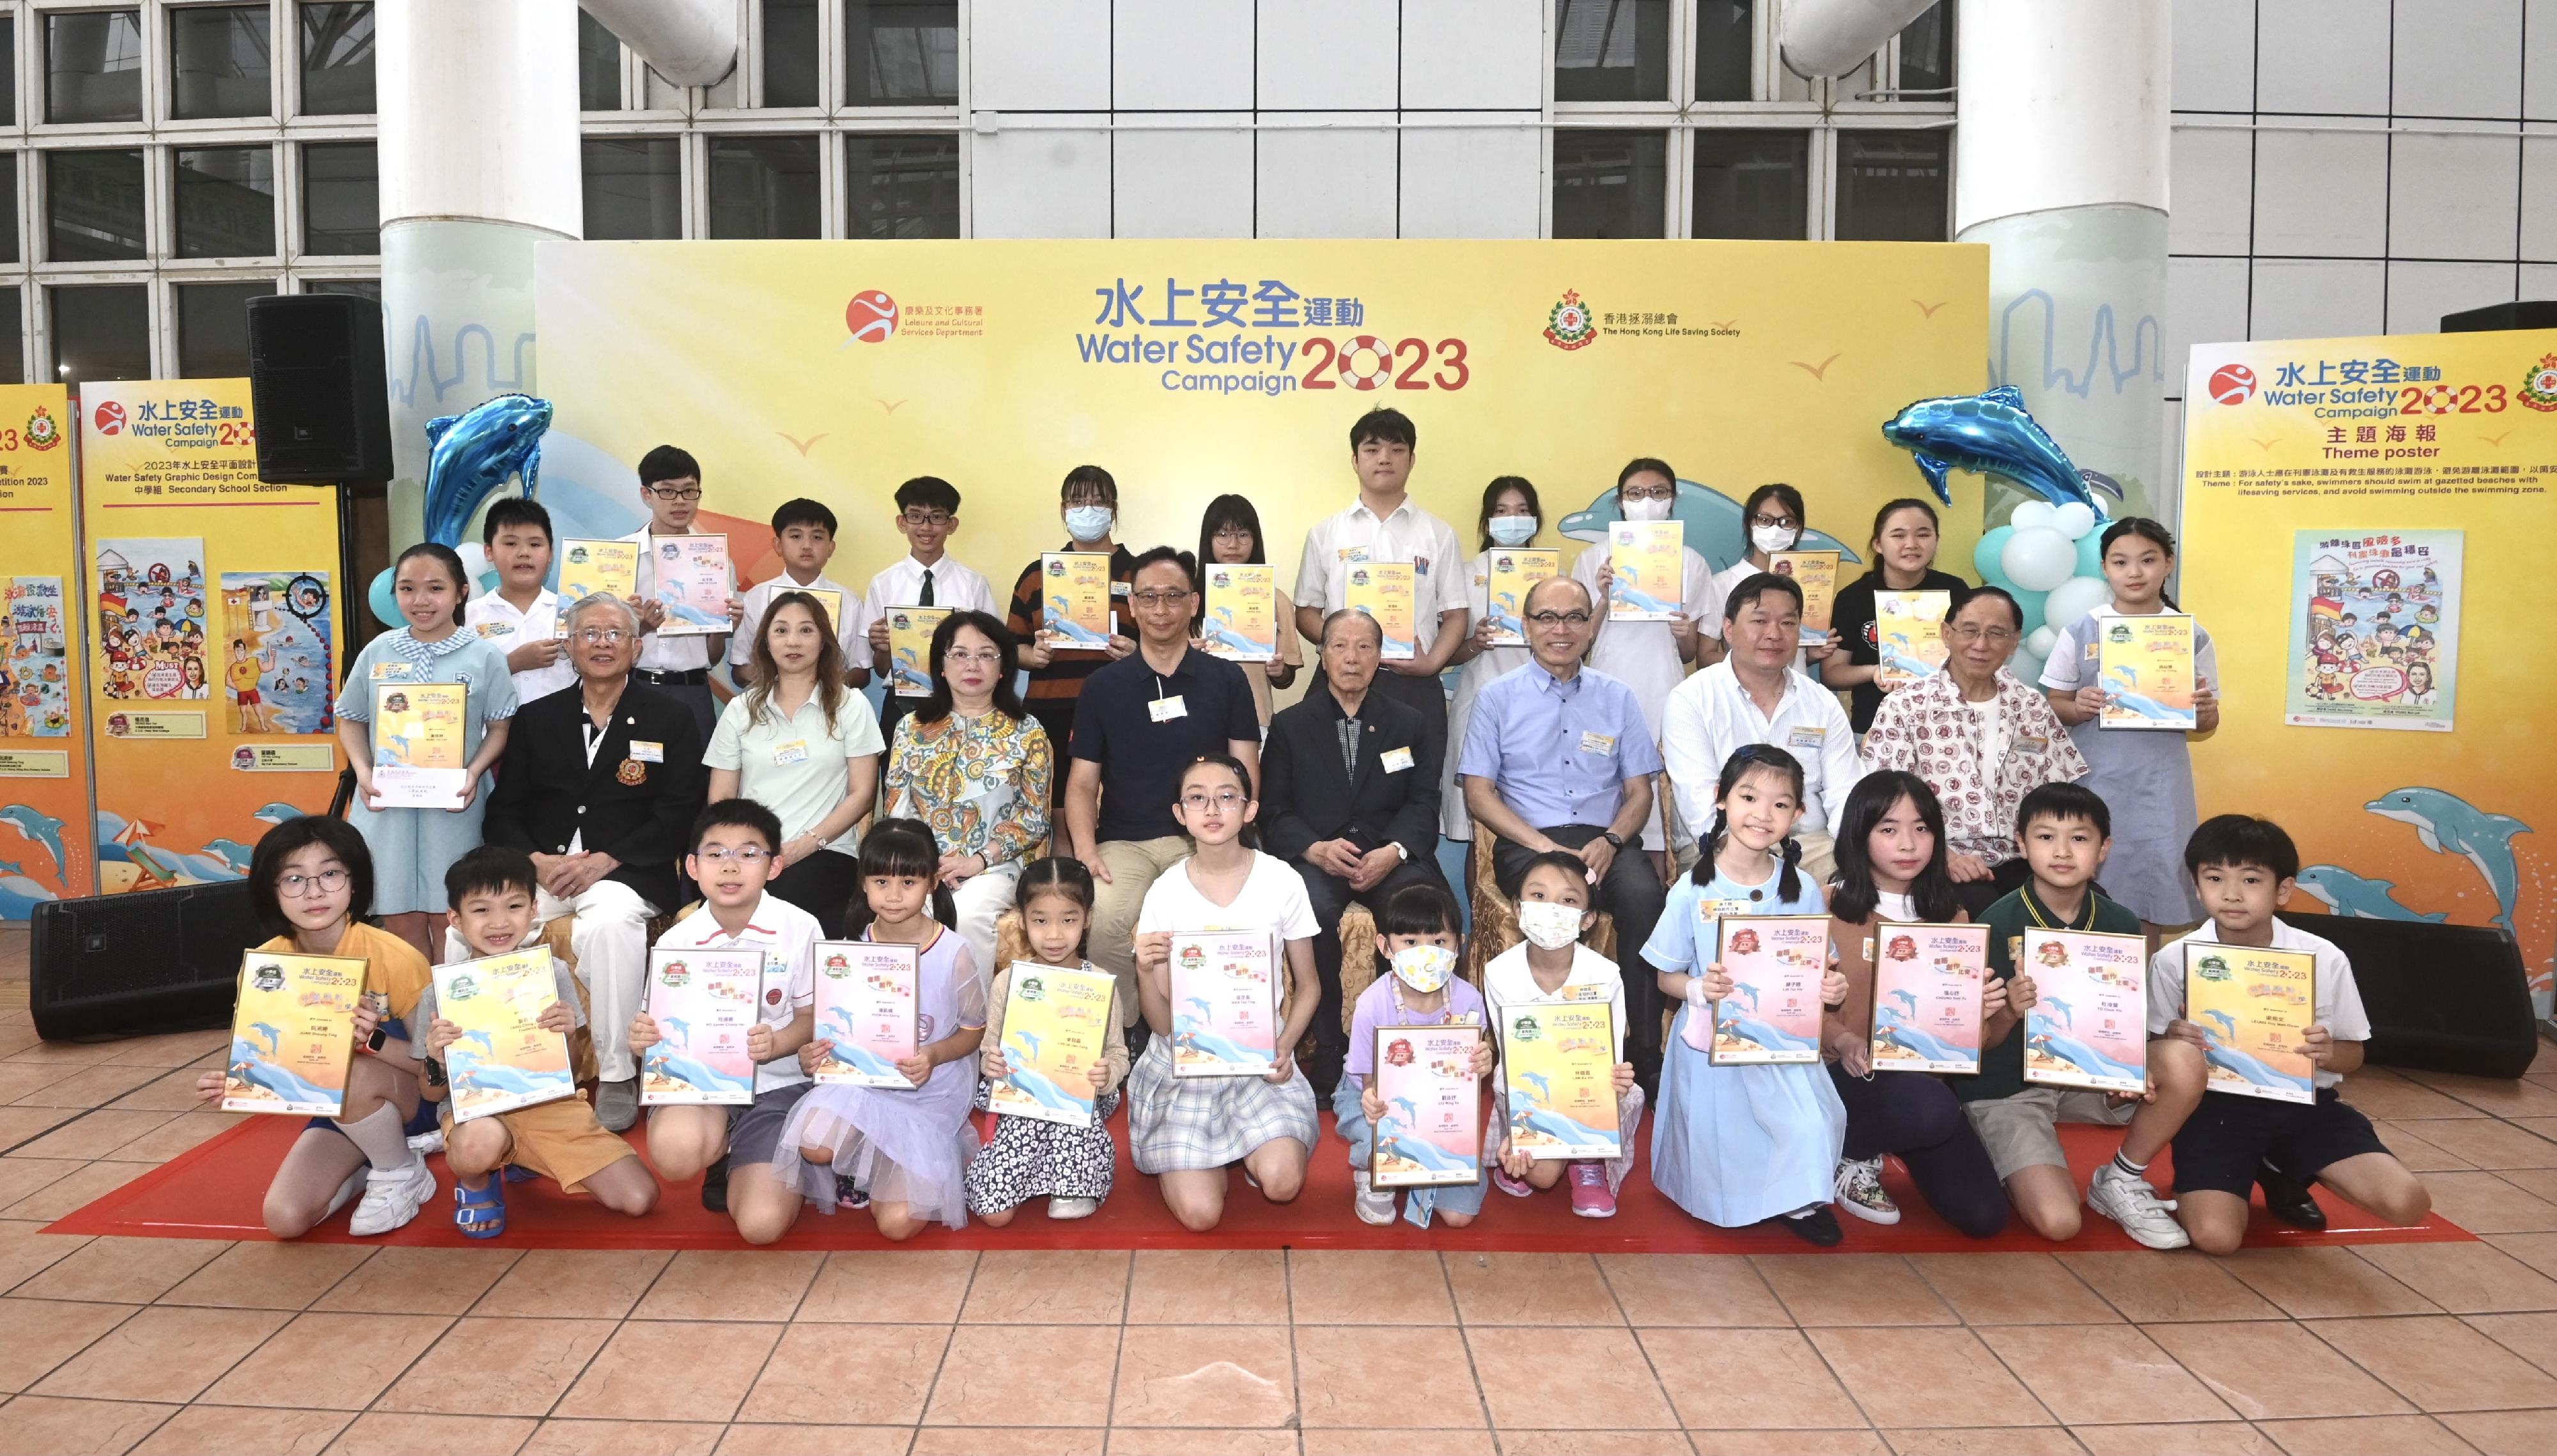 康乐及文化事务署与香港拯溺总会合办的「二○二三年水上安全运动」标语创作和平面设计比赛今日（六月二十四日）举行颁奖典礼。图示主礼嘉宾与两项比赛的得奖同学合照。

